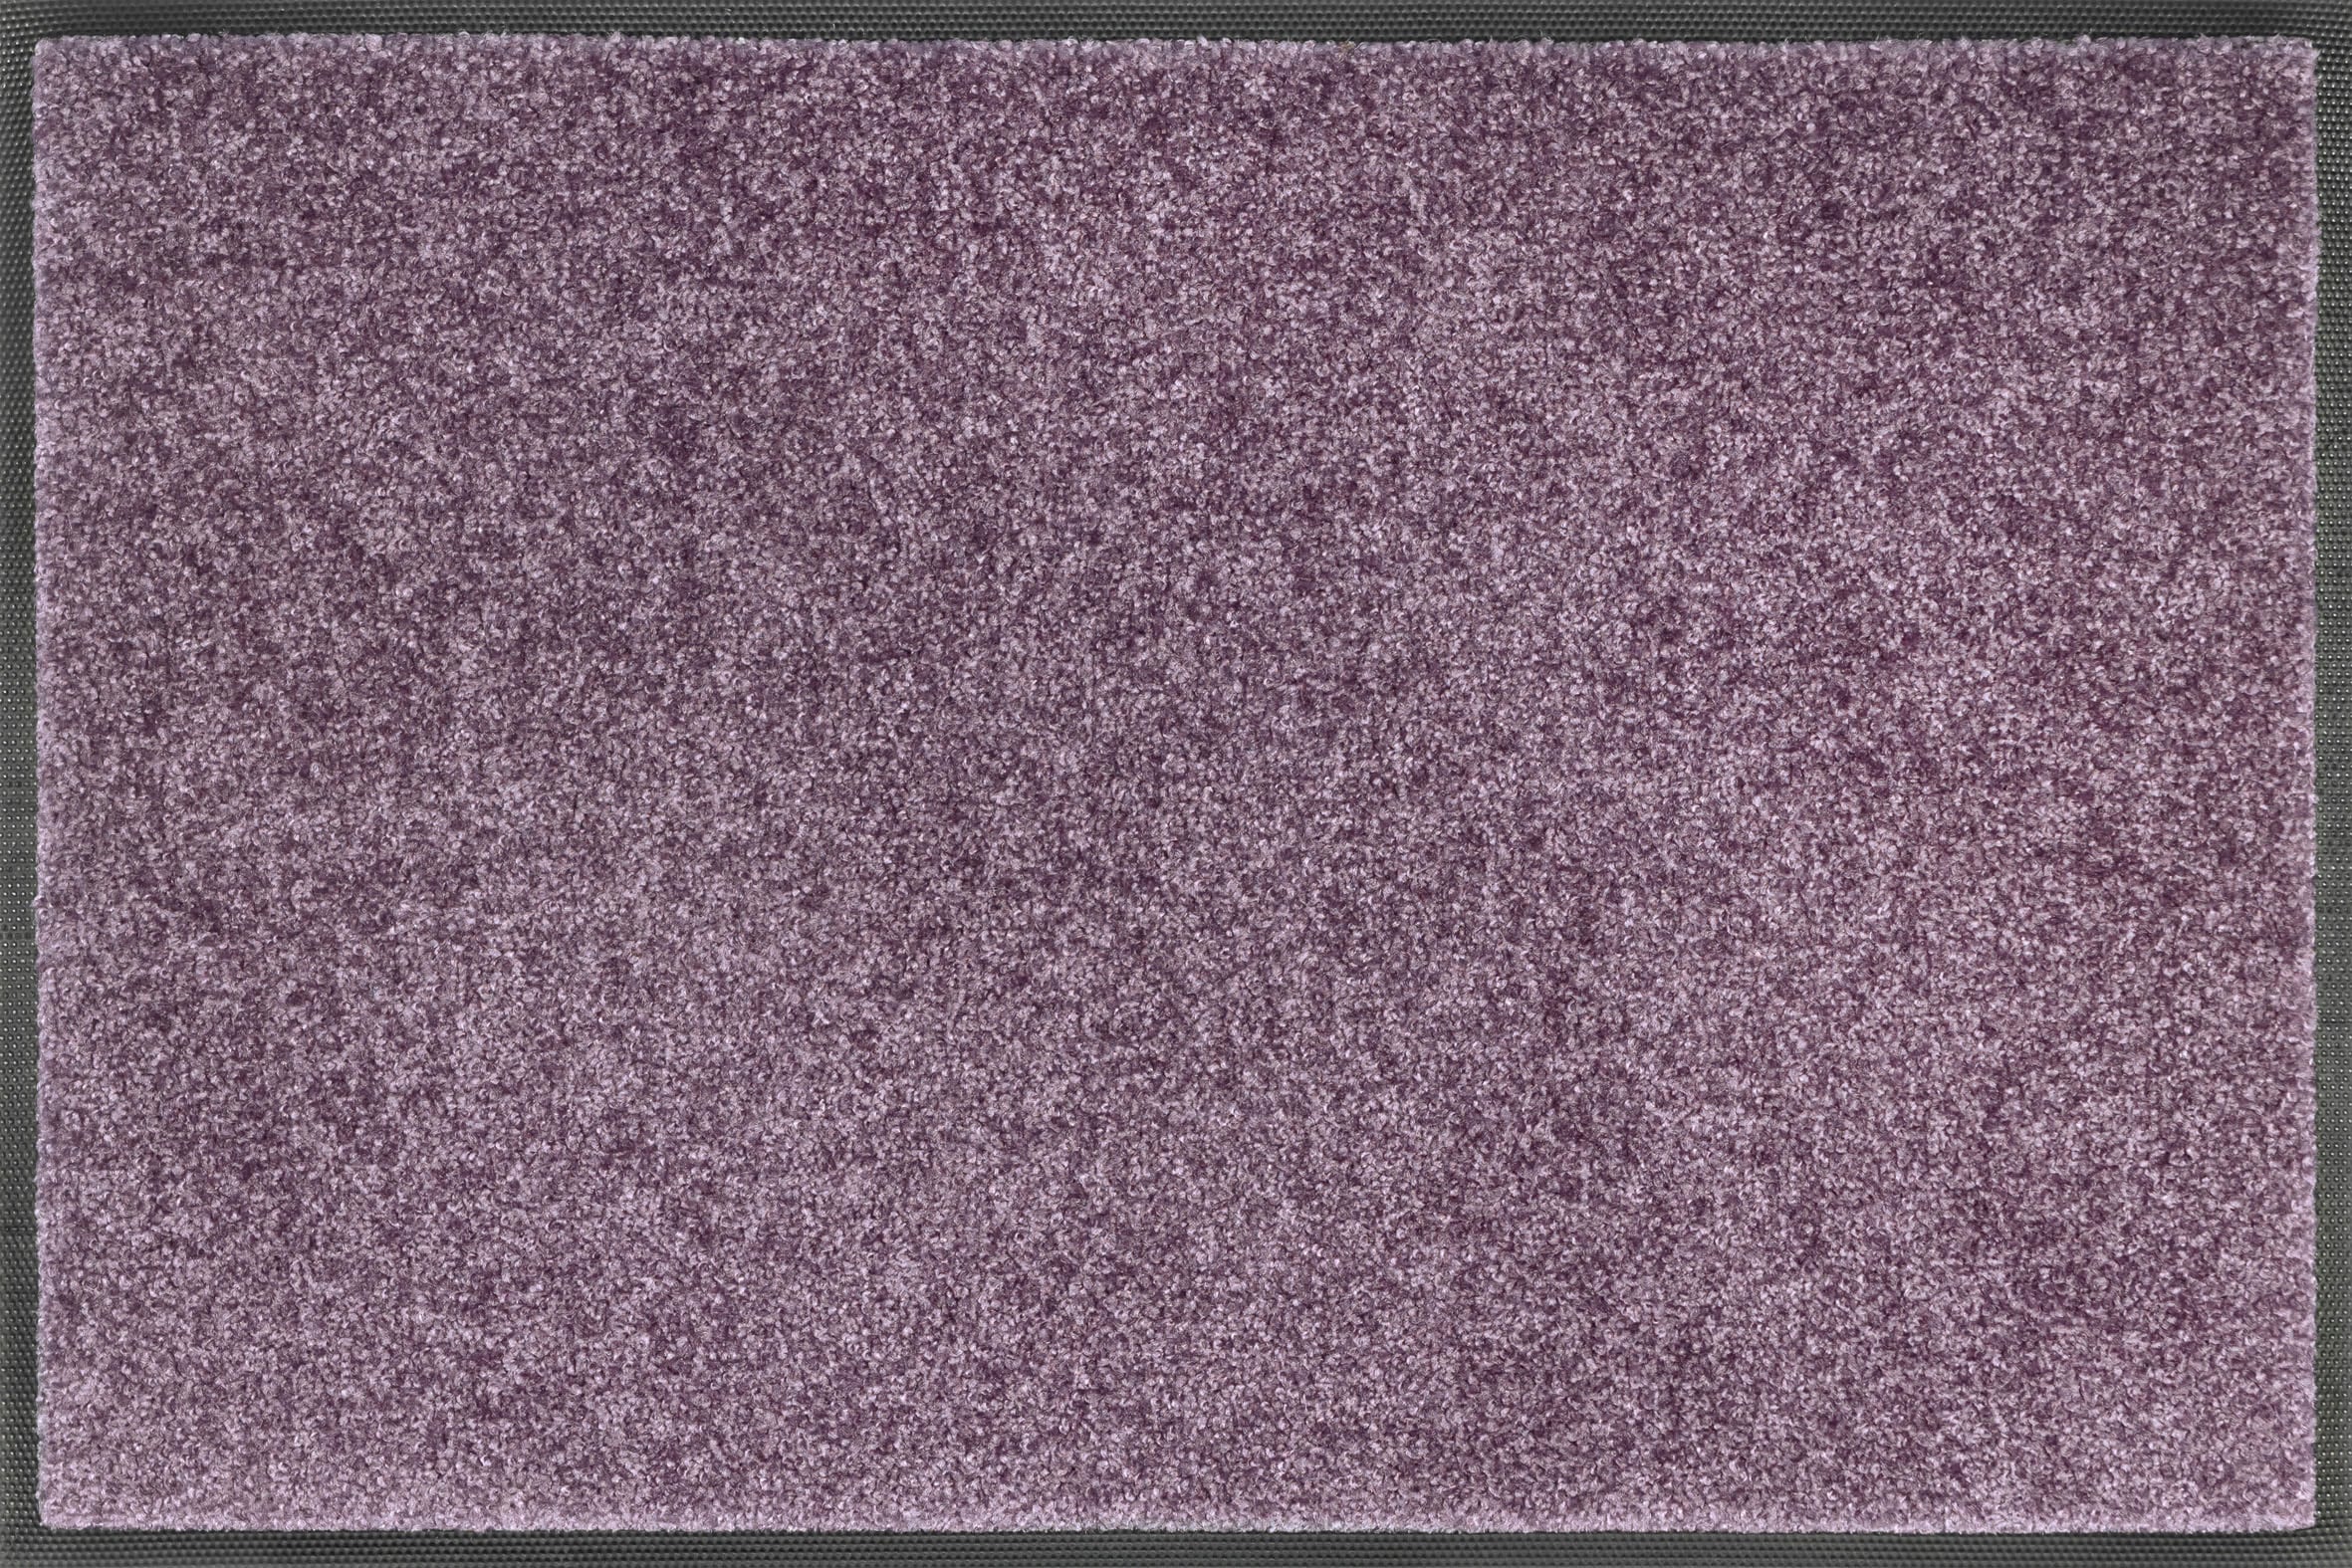 Fußmatte »Lavender Mist«, rechteckig